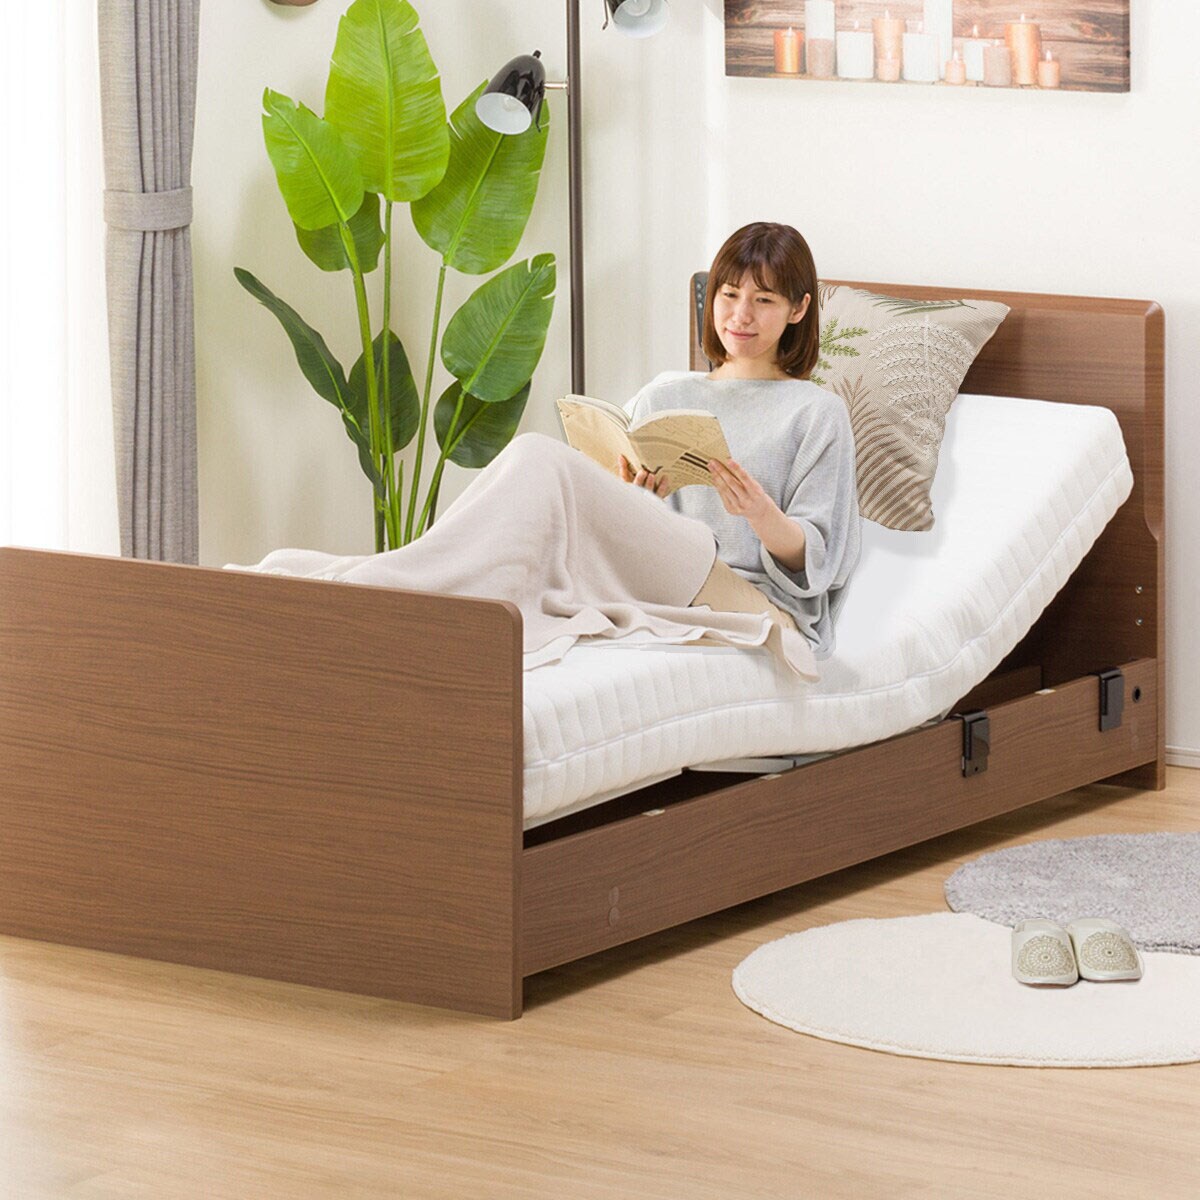 ニトリ 電動折りたたみベッド(セレサ2) 手すり付きセット - 簡易ベッド 